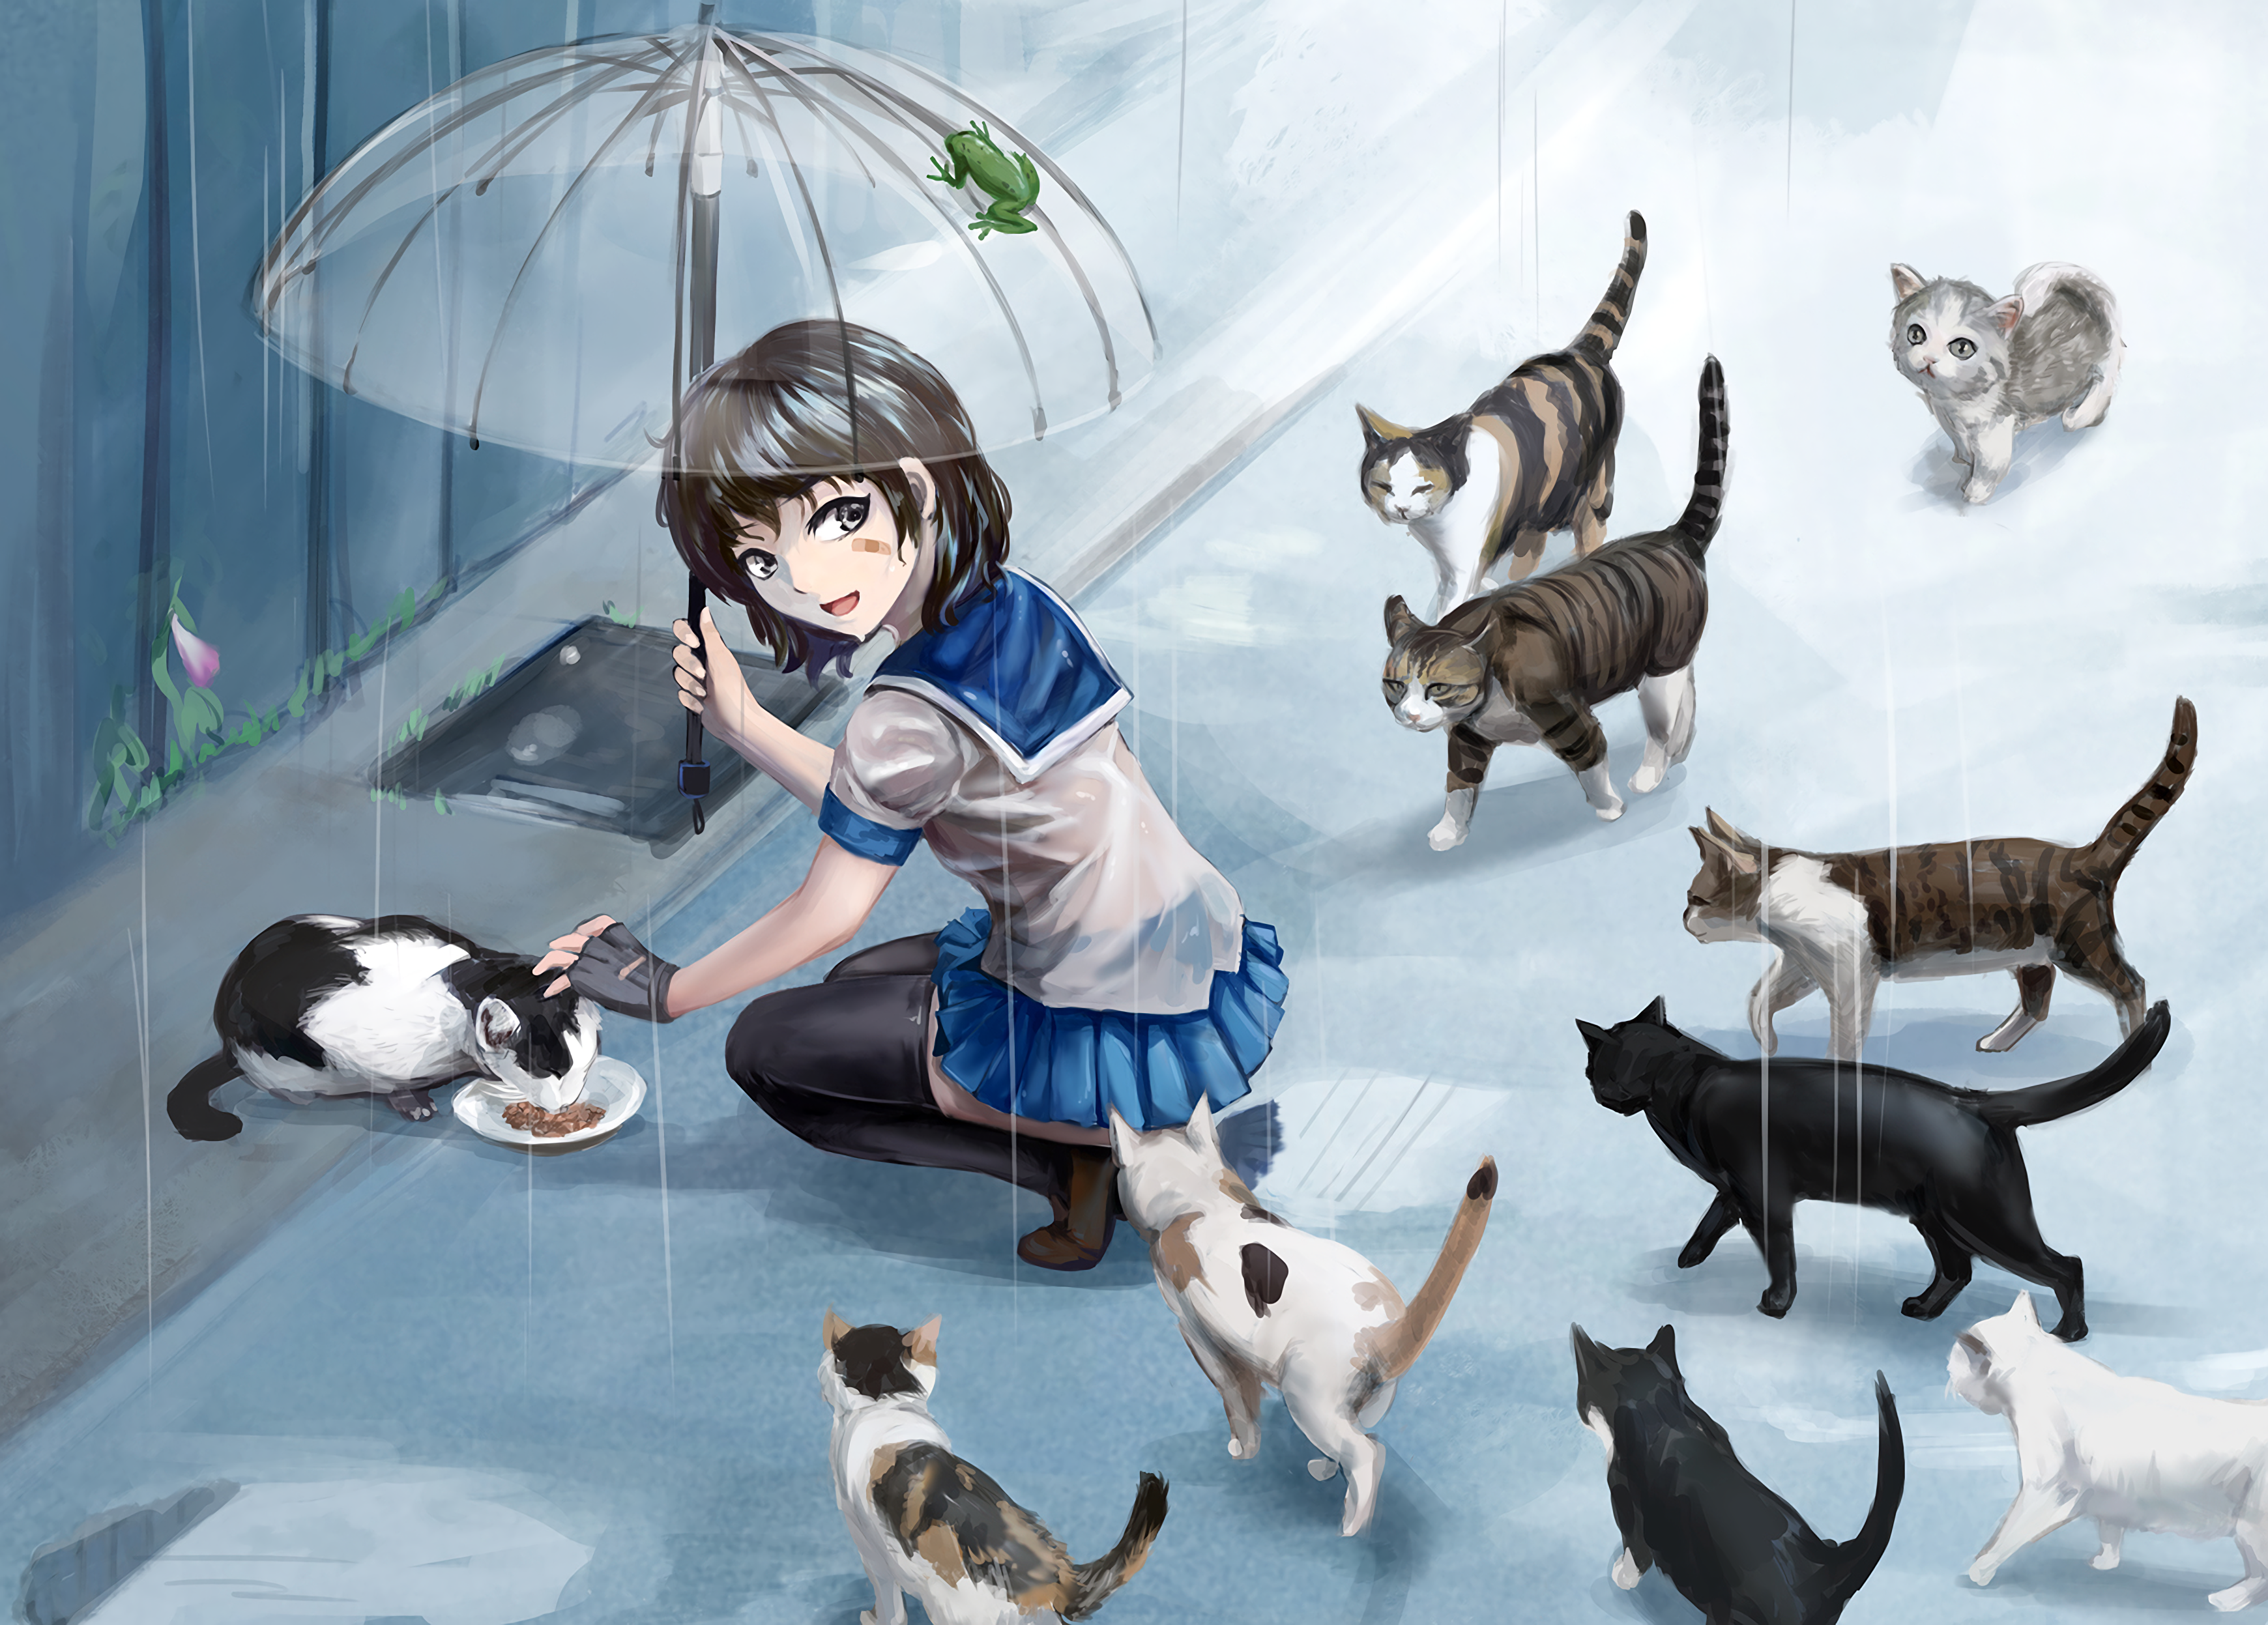 Anime 3480x2494 anime anime girls umbrella wet wet clothing rain cats short hair brunette stockings